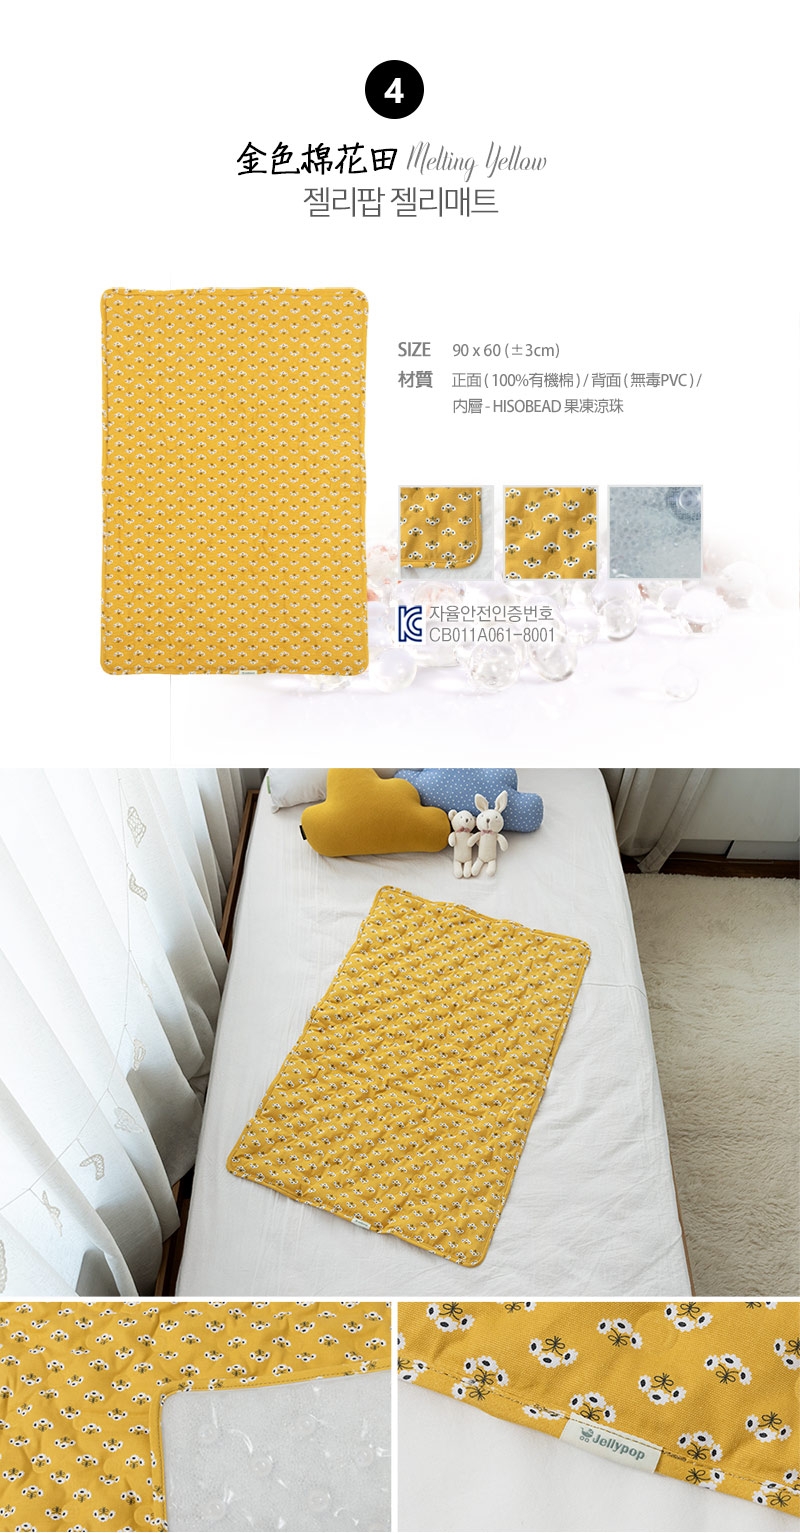 韓國Jellymat 微顆粒酷涼珠有機棉果凍床墊 (共6款可選)